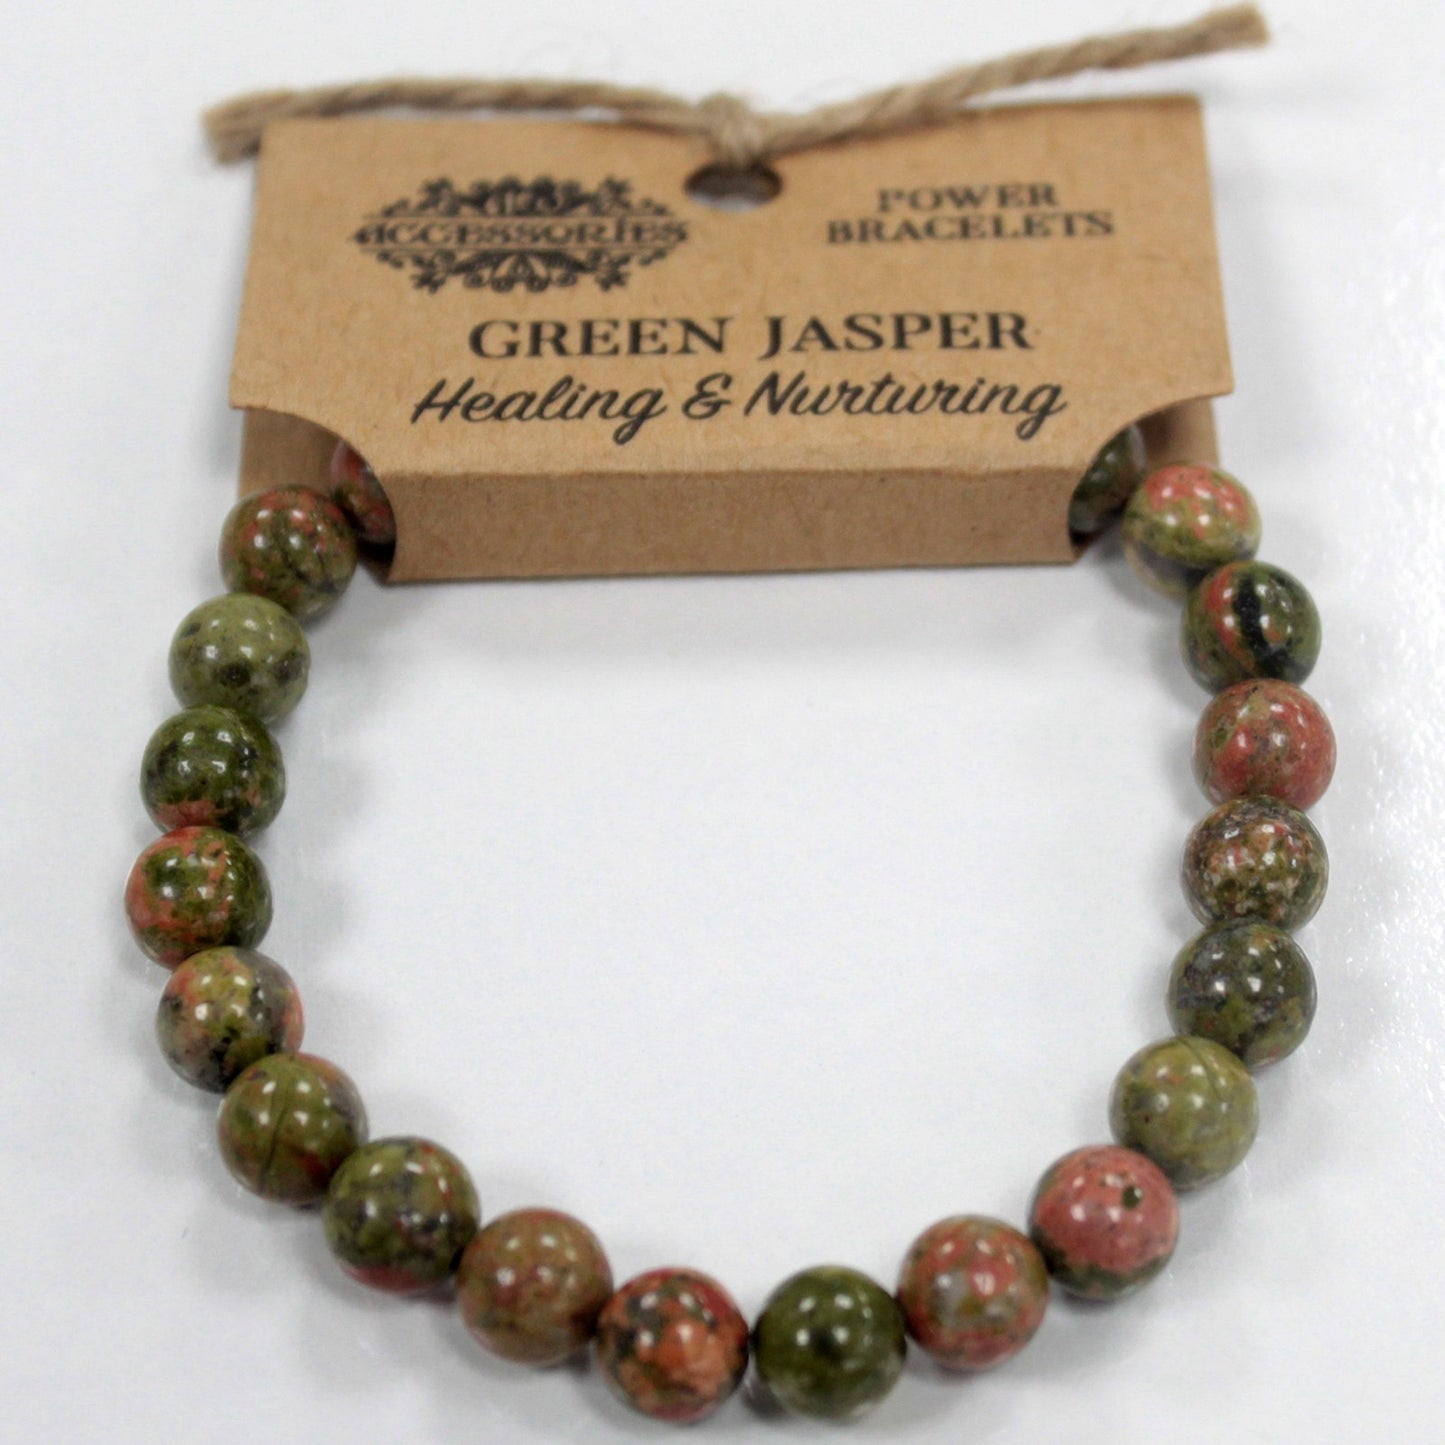 Pulsera brazalete de piedras verdosas de jaspe verde con etiqueta de cartón para colgar en expositor